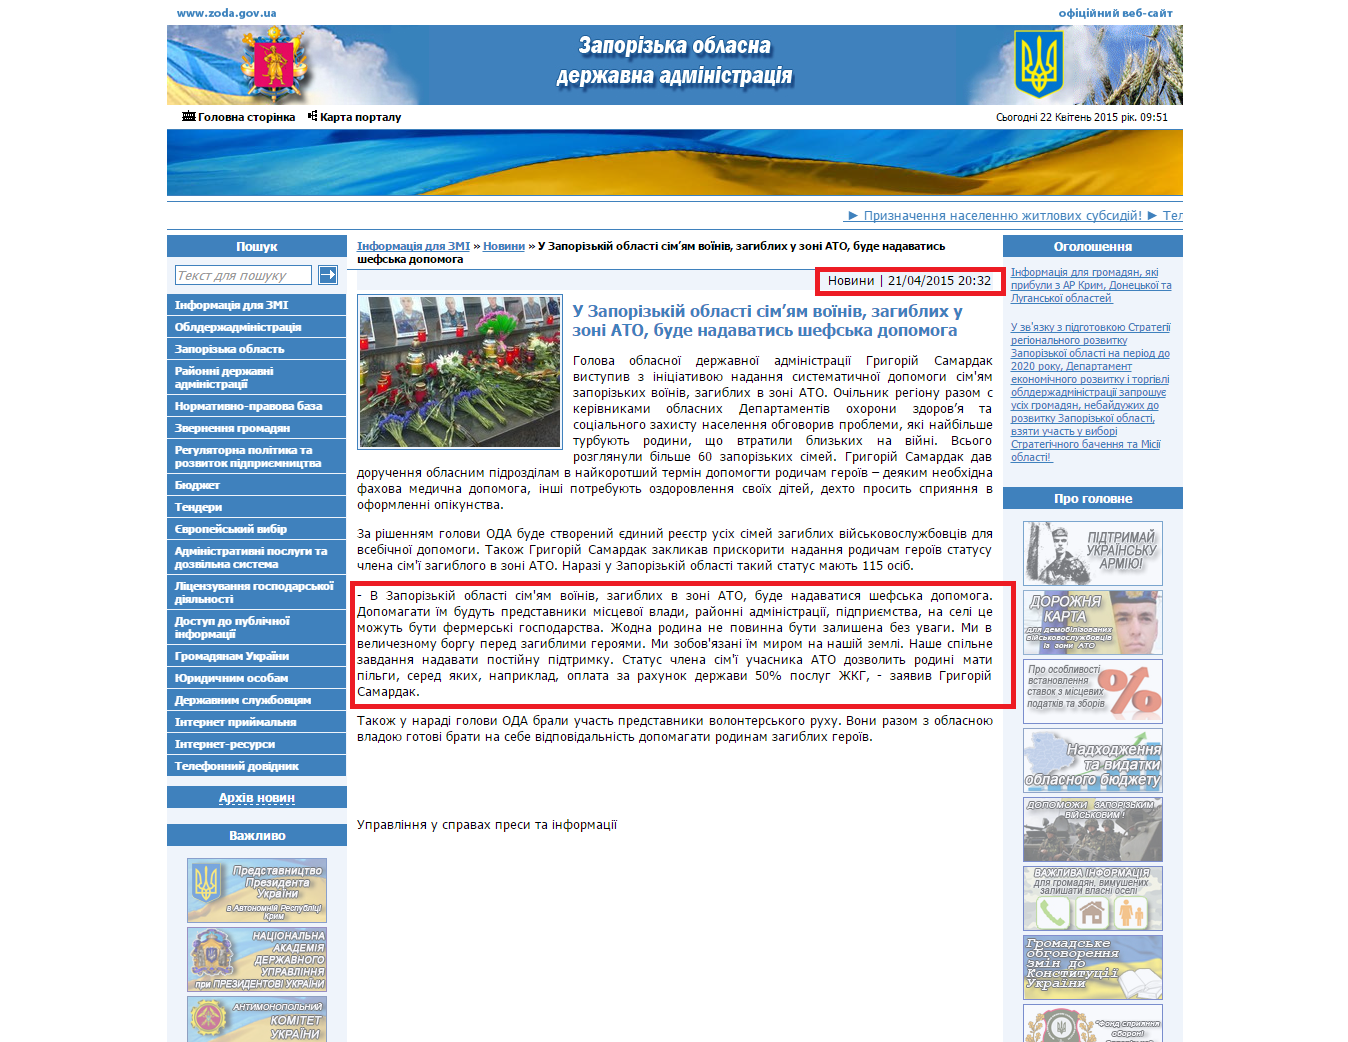 http://www.zoda.gov.ua/news/26773/u-zaporizkiy-oblasti-simyam-vojiniv,-zagiblih-u-zoni-ato,-bude-nadavatis-shefska-dopomoga.html